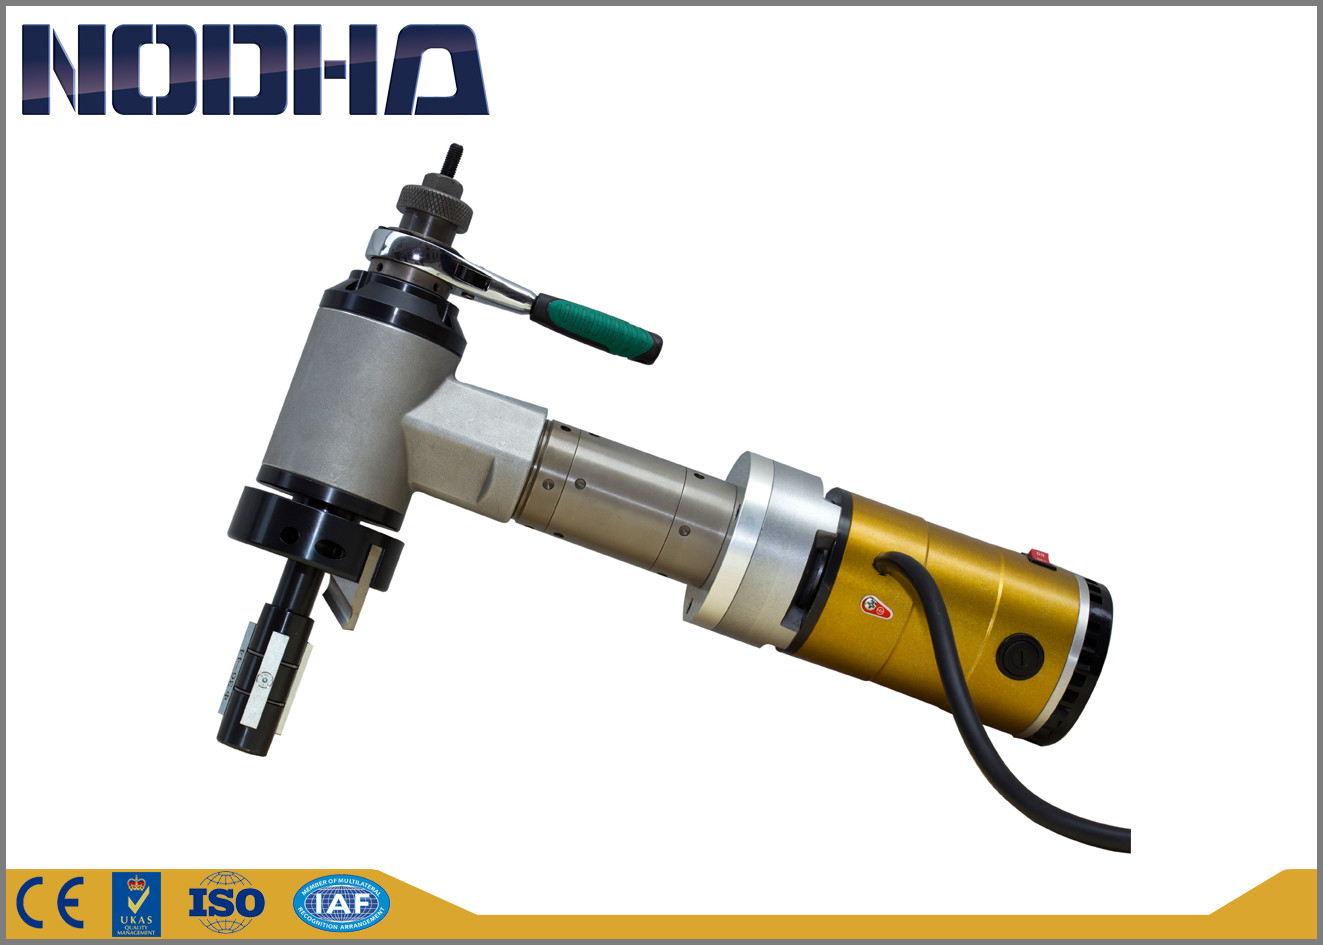 ID - установлено электропривод на конец трубы машинка для снятия фаски NODHA марка